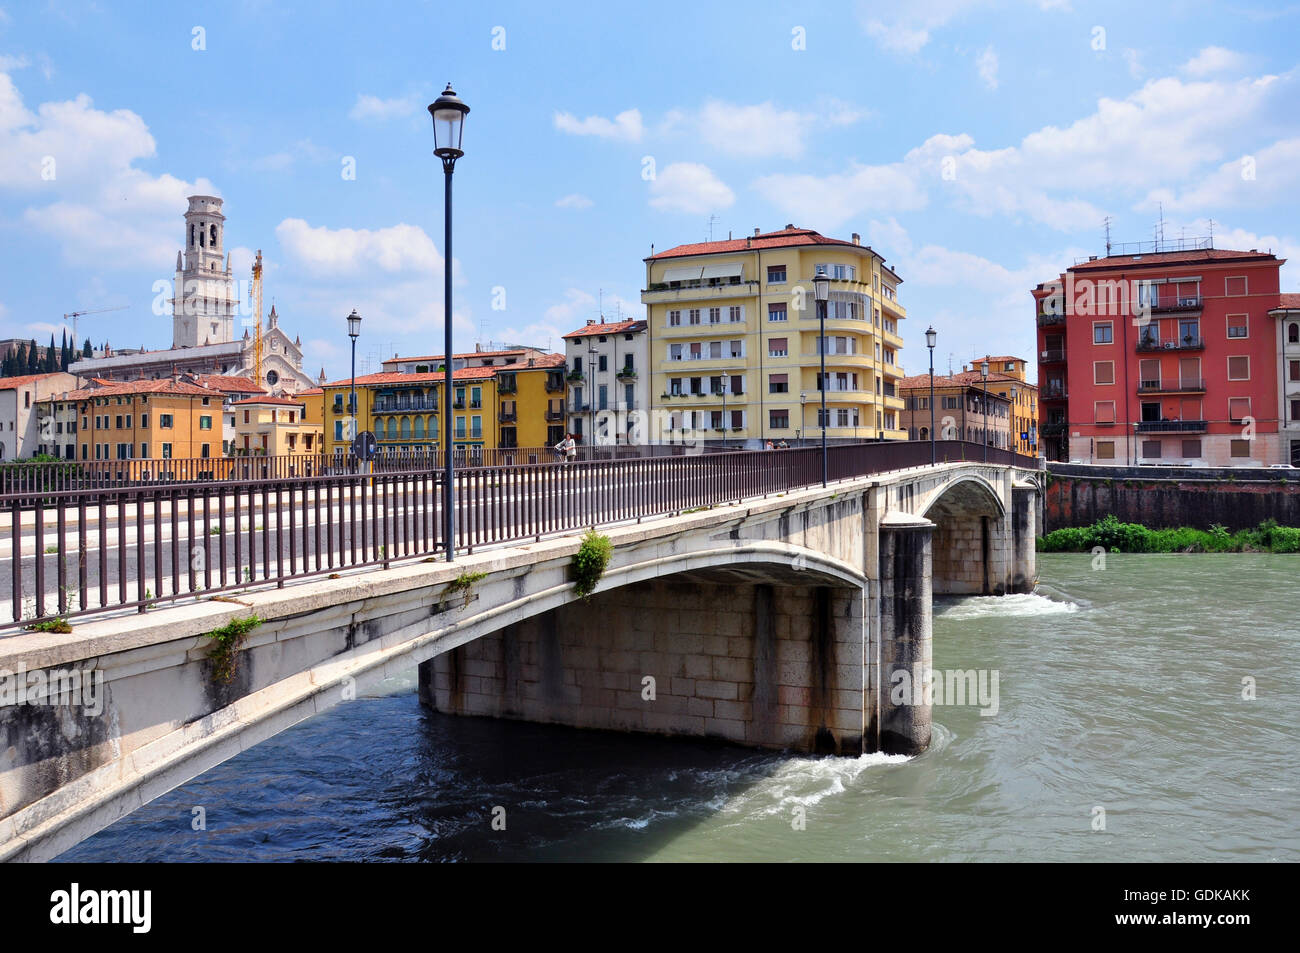 Verona city, Italy Stock Photo